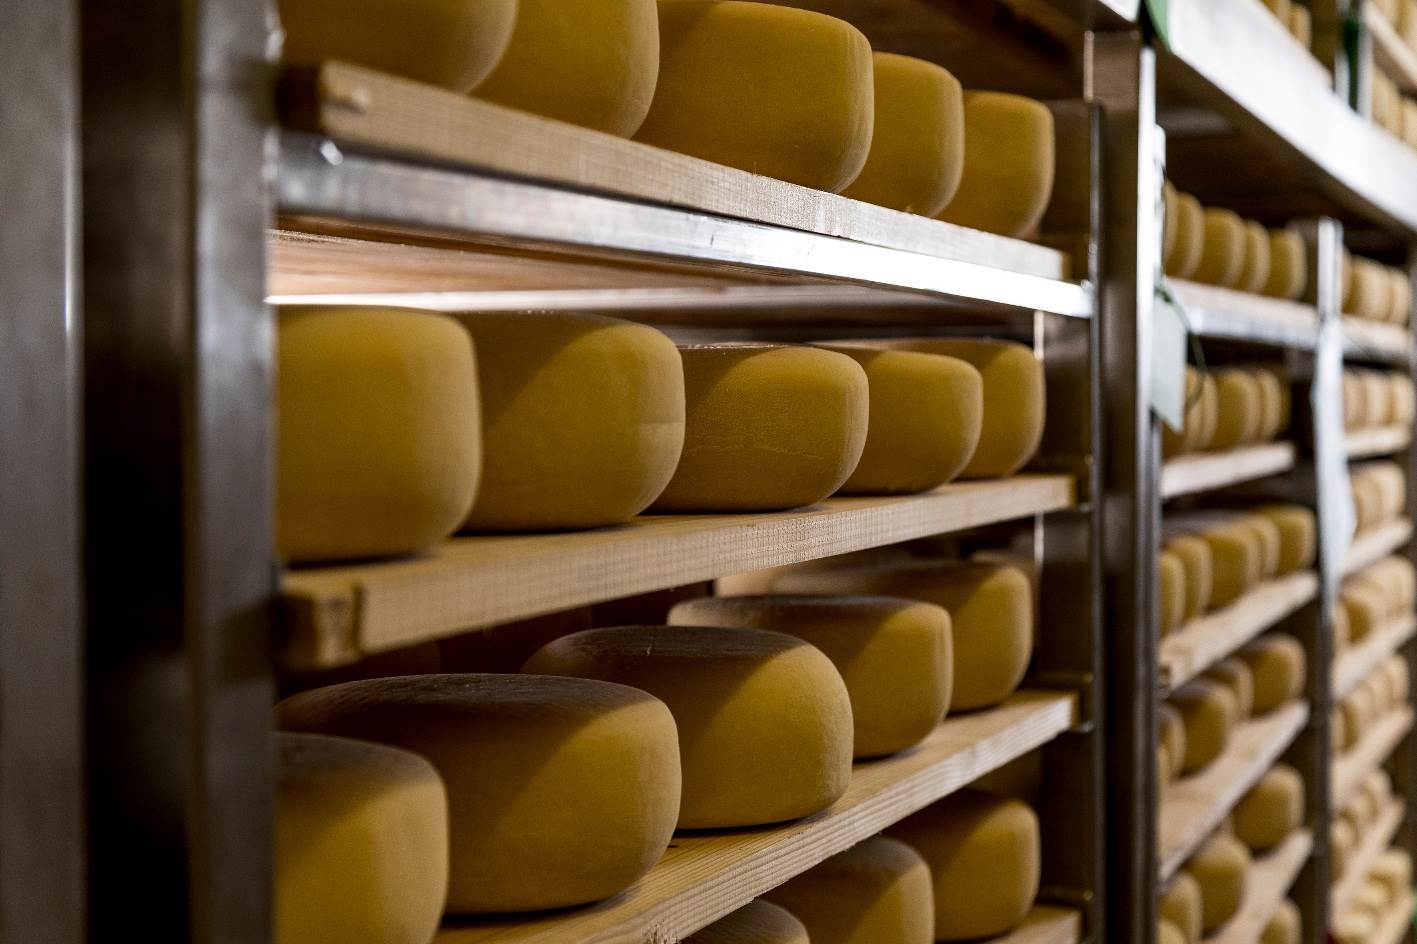 Čestitamo Dan ljubitelja sira svima koji ga slave!